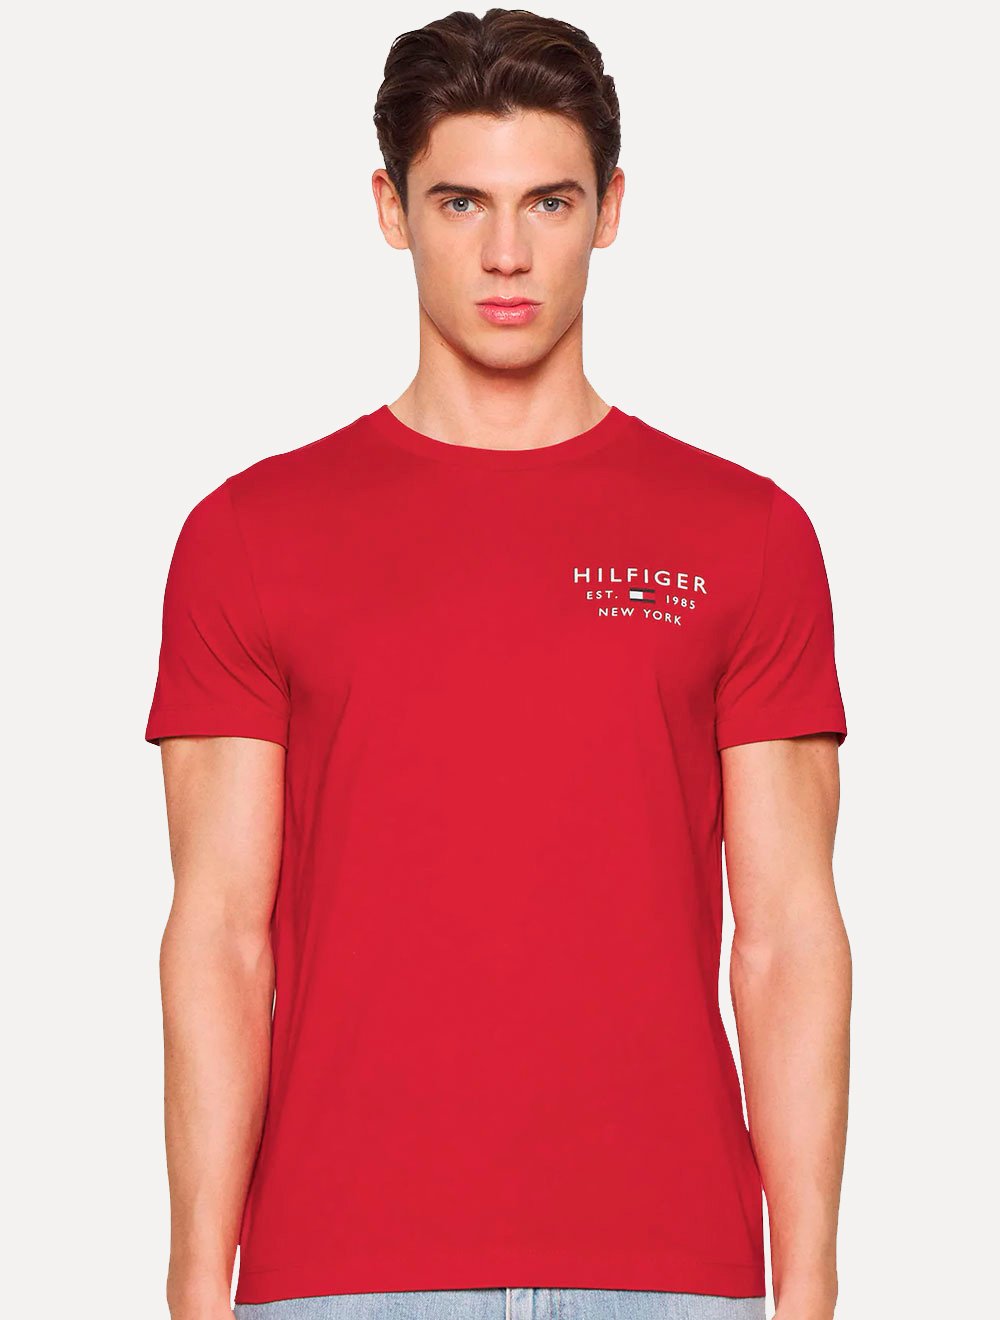 Camiseta Tommy Hilfiger Masculina Essential Cotton Laranja Coral, Secret  Outlet